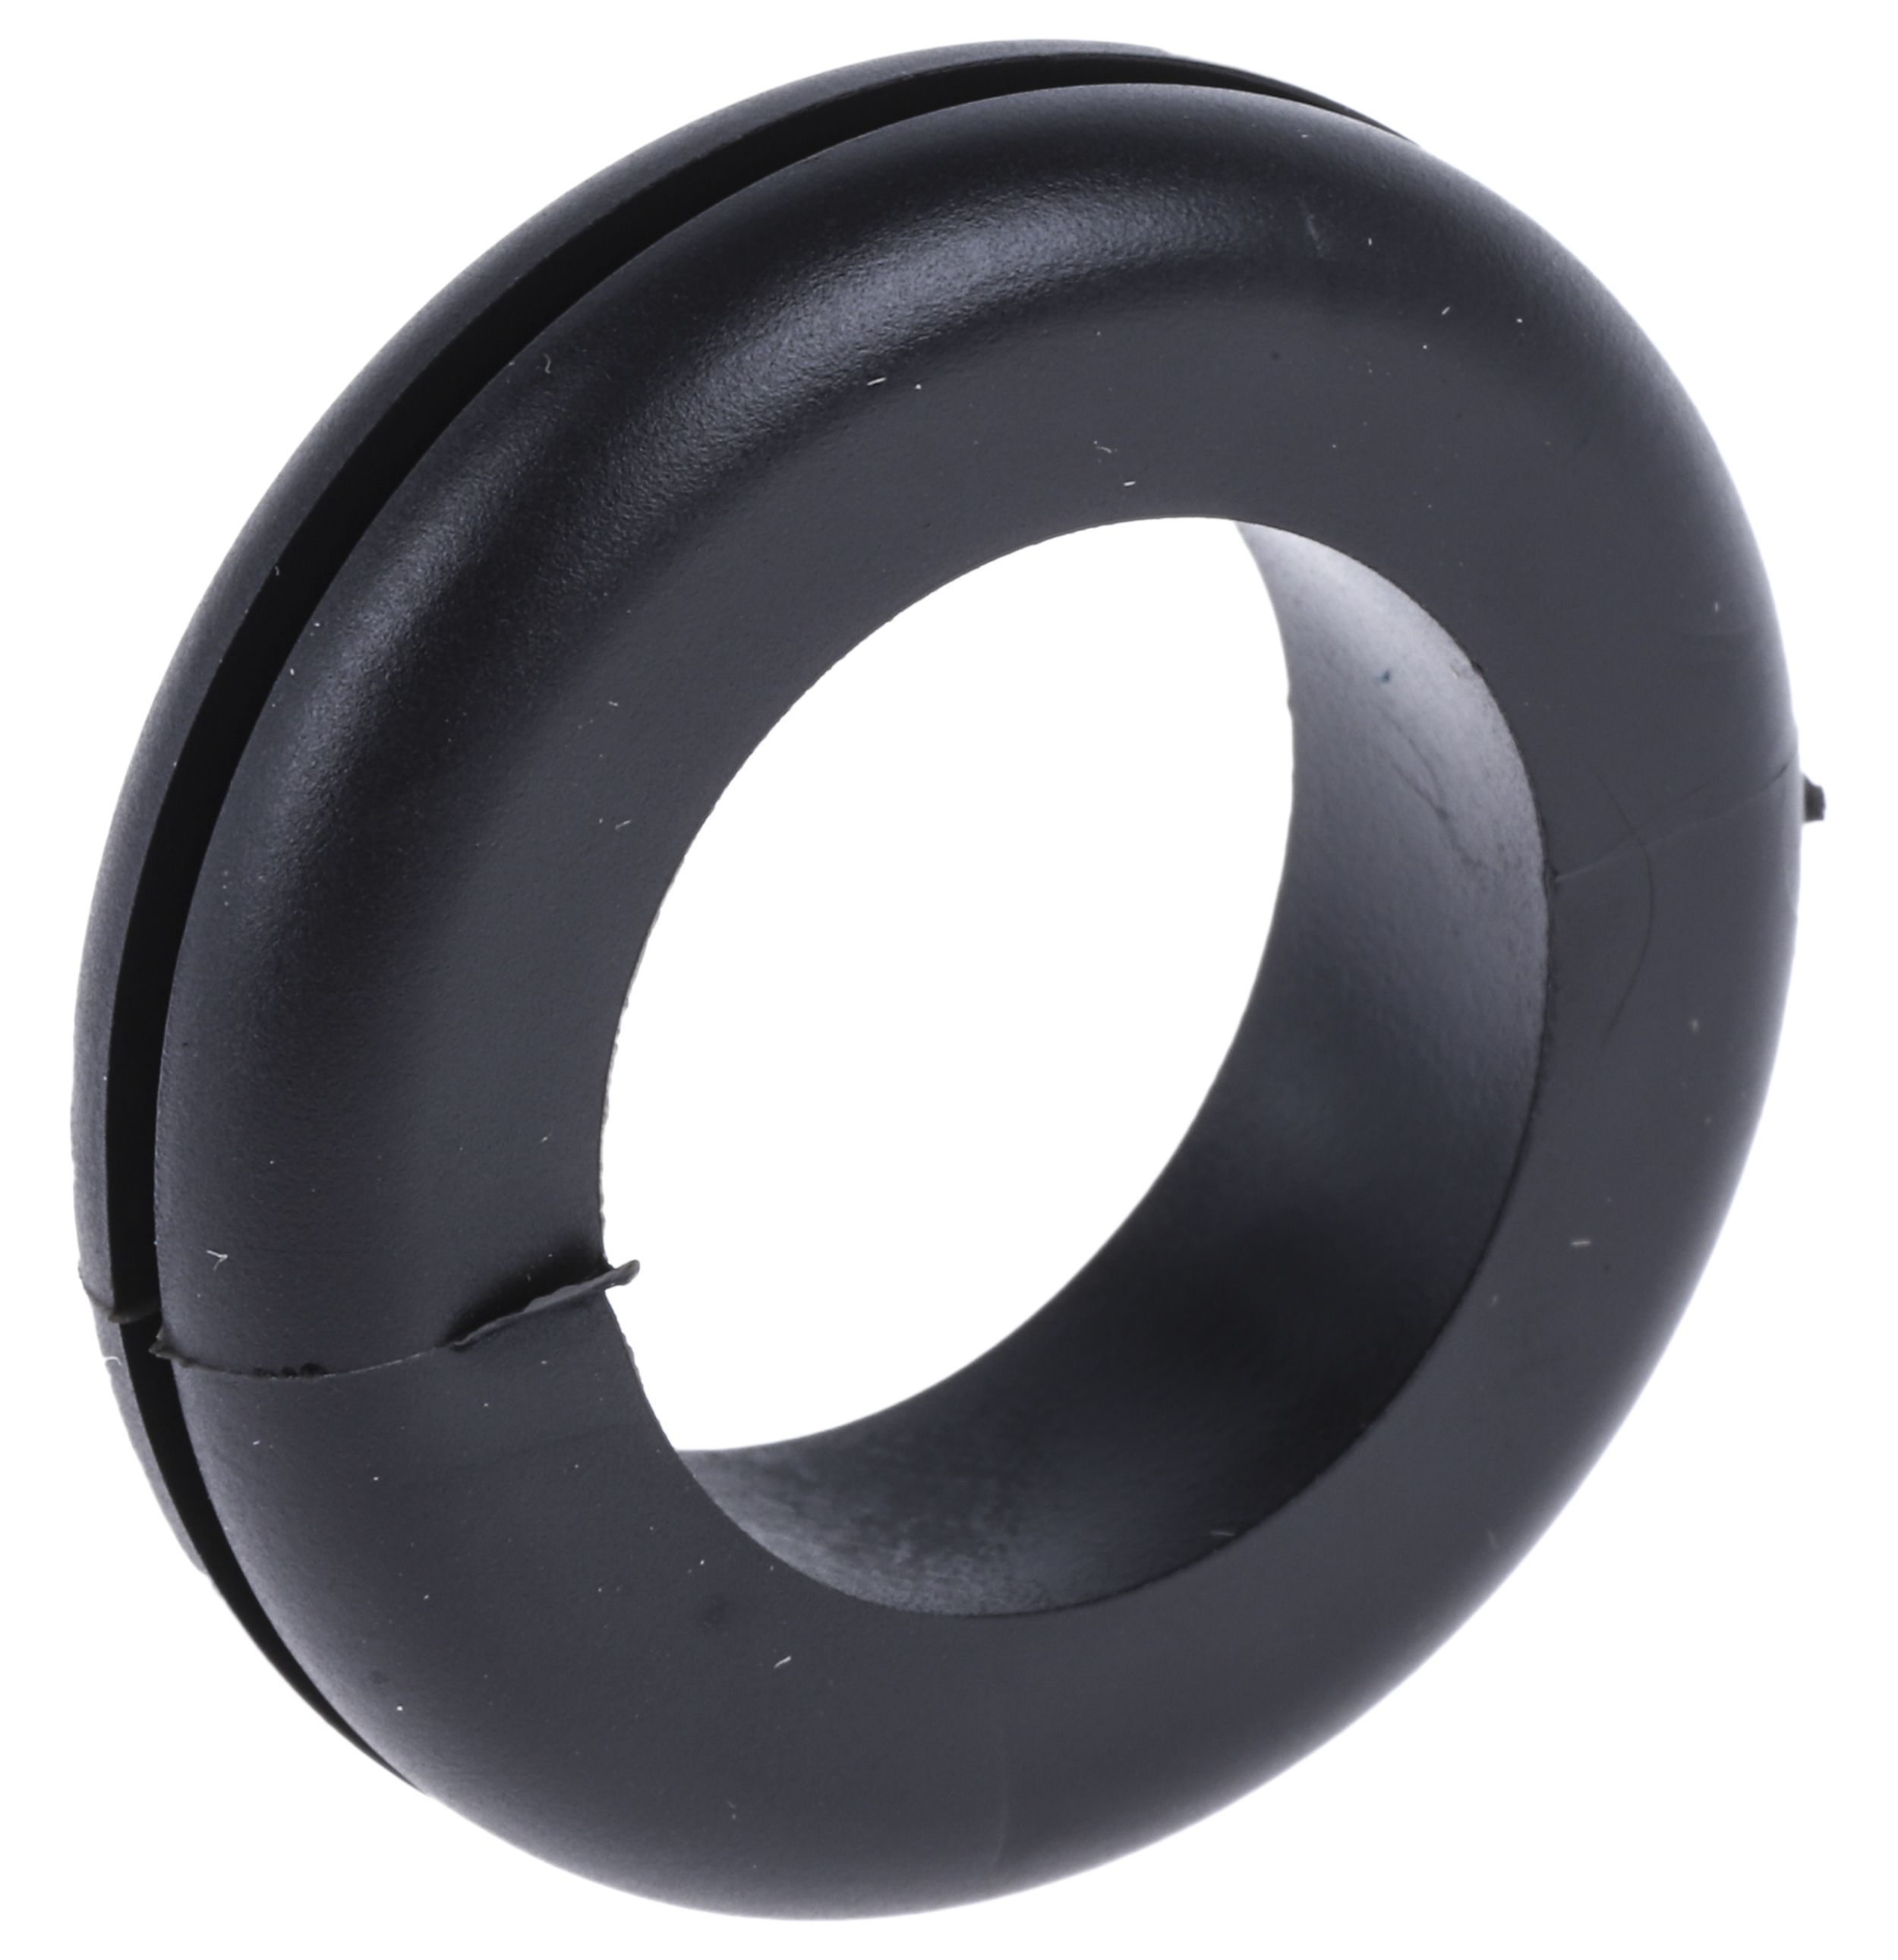 Kábelalátétgyűrű PVC Kábelgyűrű, 1.6mm Fekete, Ø: Maximum of 18.5mm 25mm